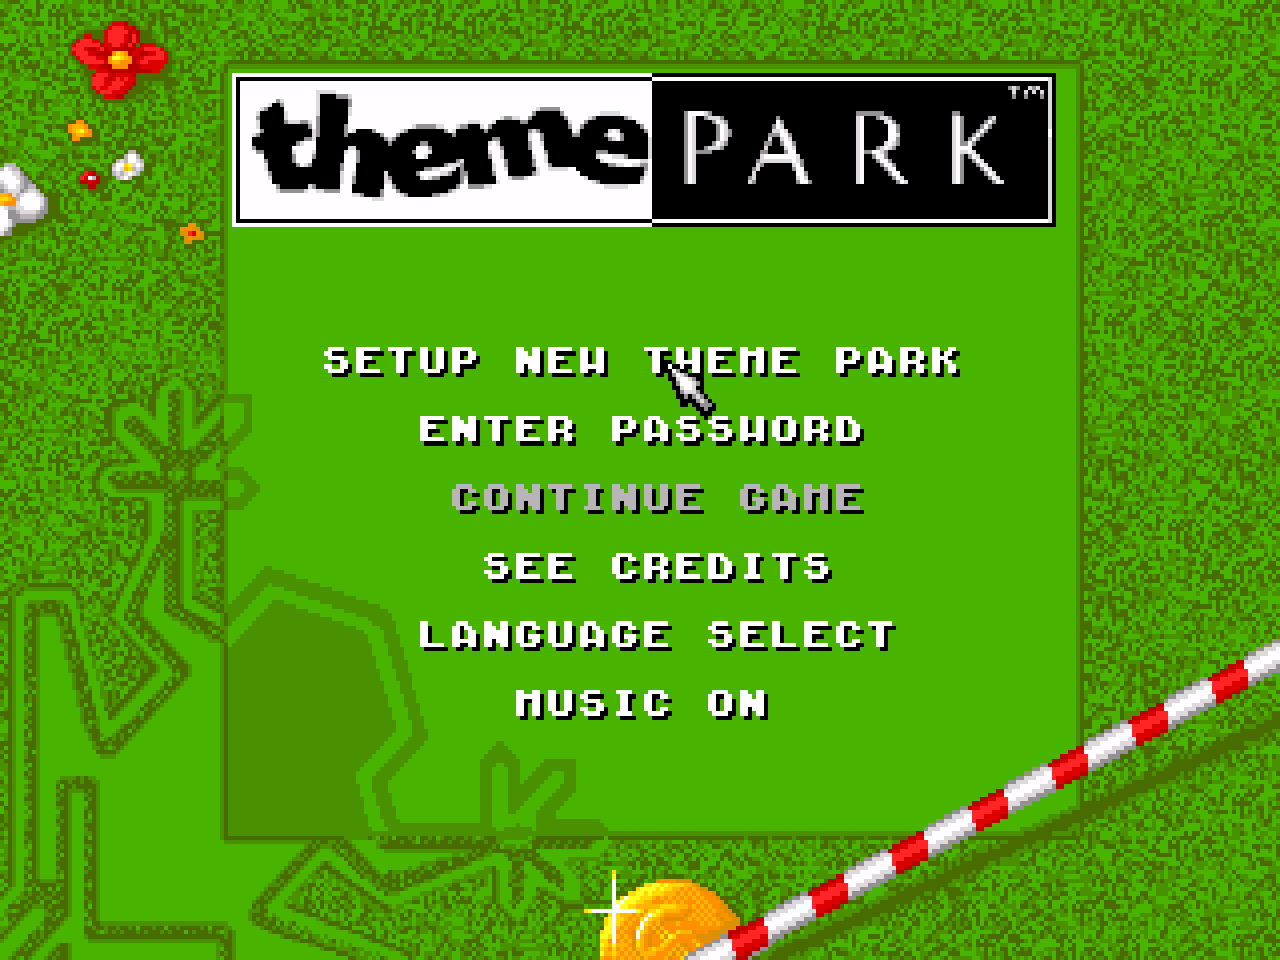 Игра парк на сеге. Игра на сегу про парк аттракционов. Theme Park игра сега. Theme Park Sega диск. Игра на Денди парк развлечений.